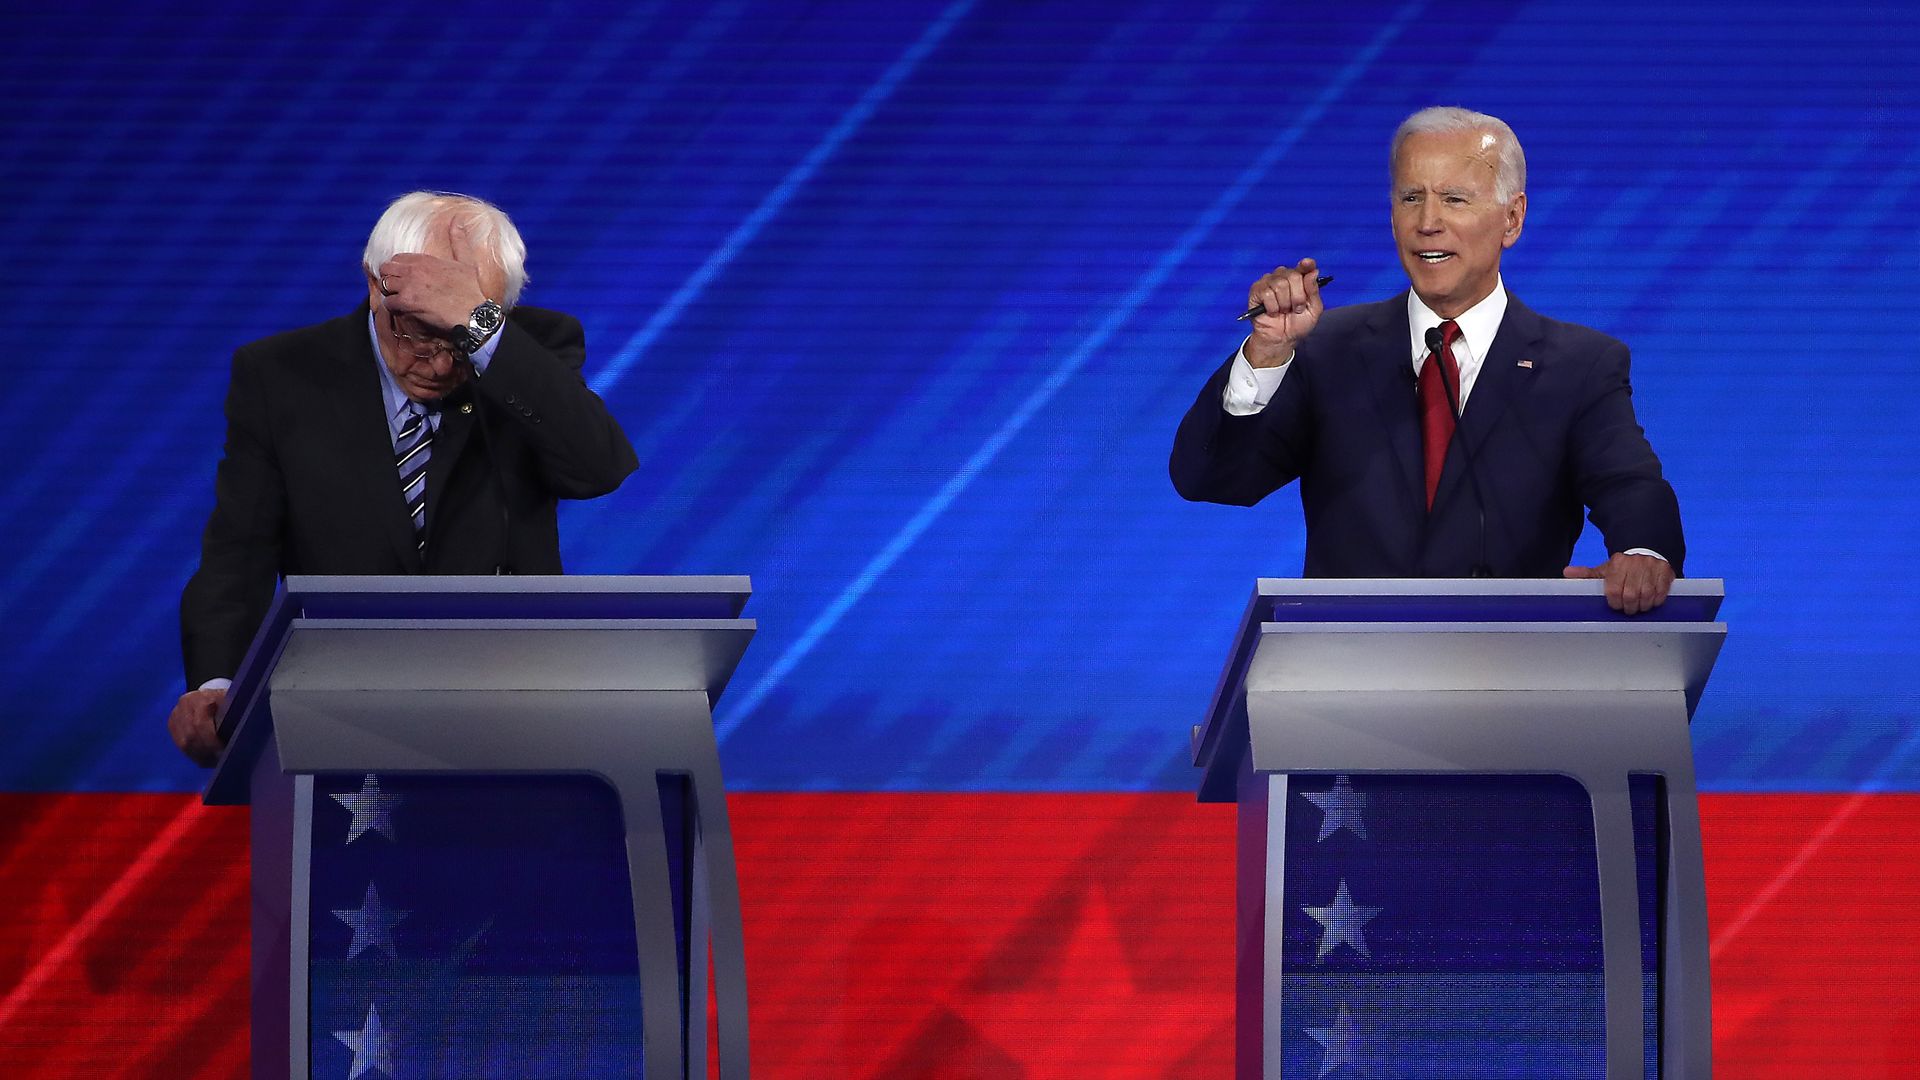 Sen. Bernie Sanders and former Vice President Joe Biden on the debate stage.